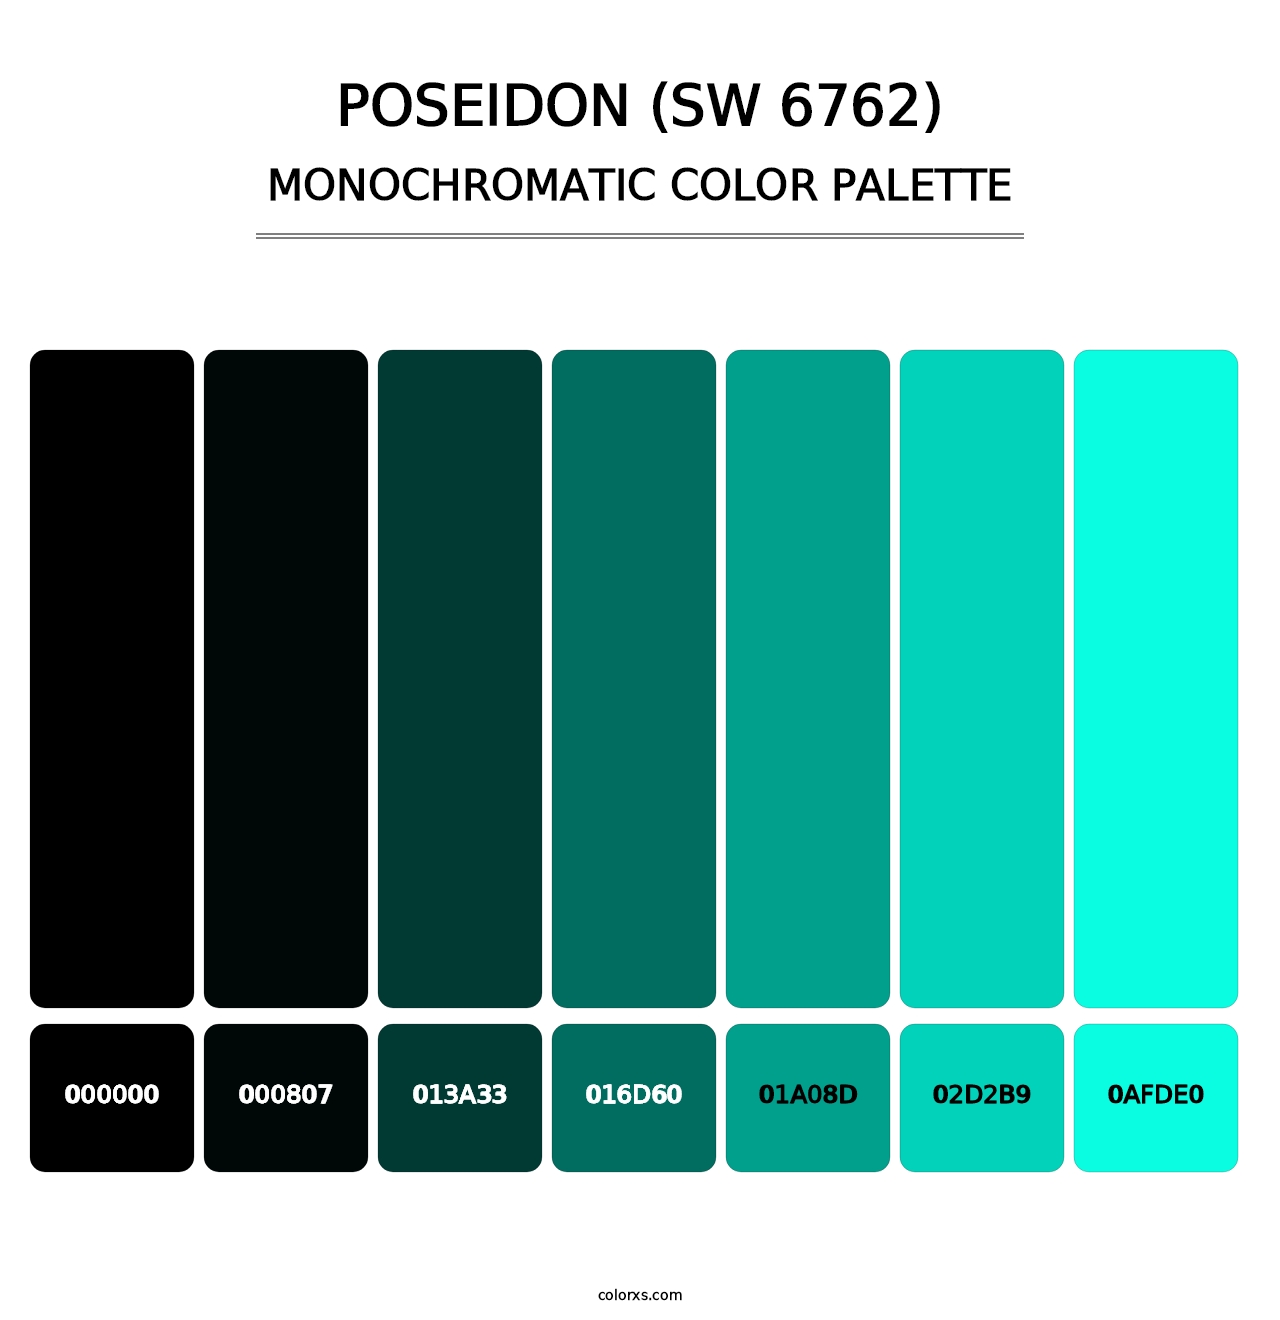 Poseidon (SW 6762) - Monochromatic Color Palette